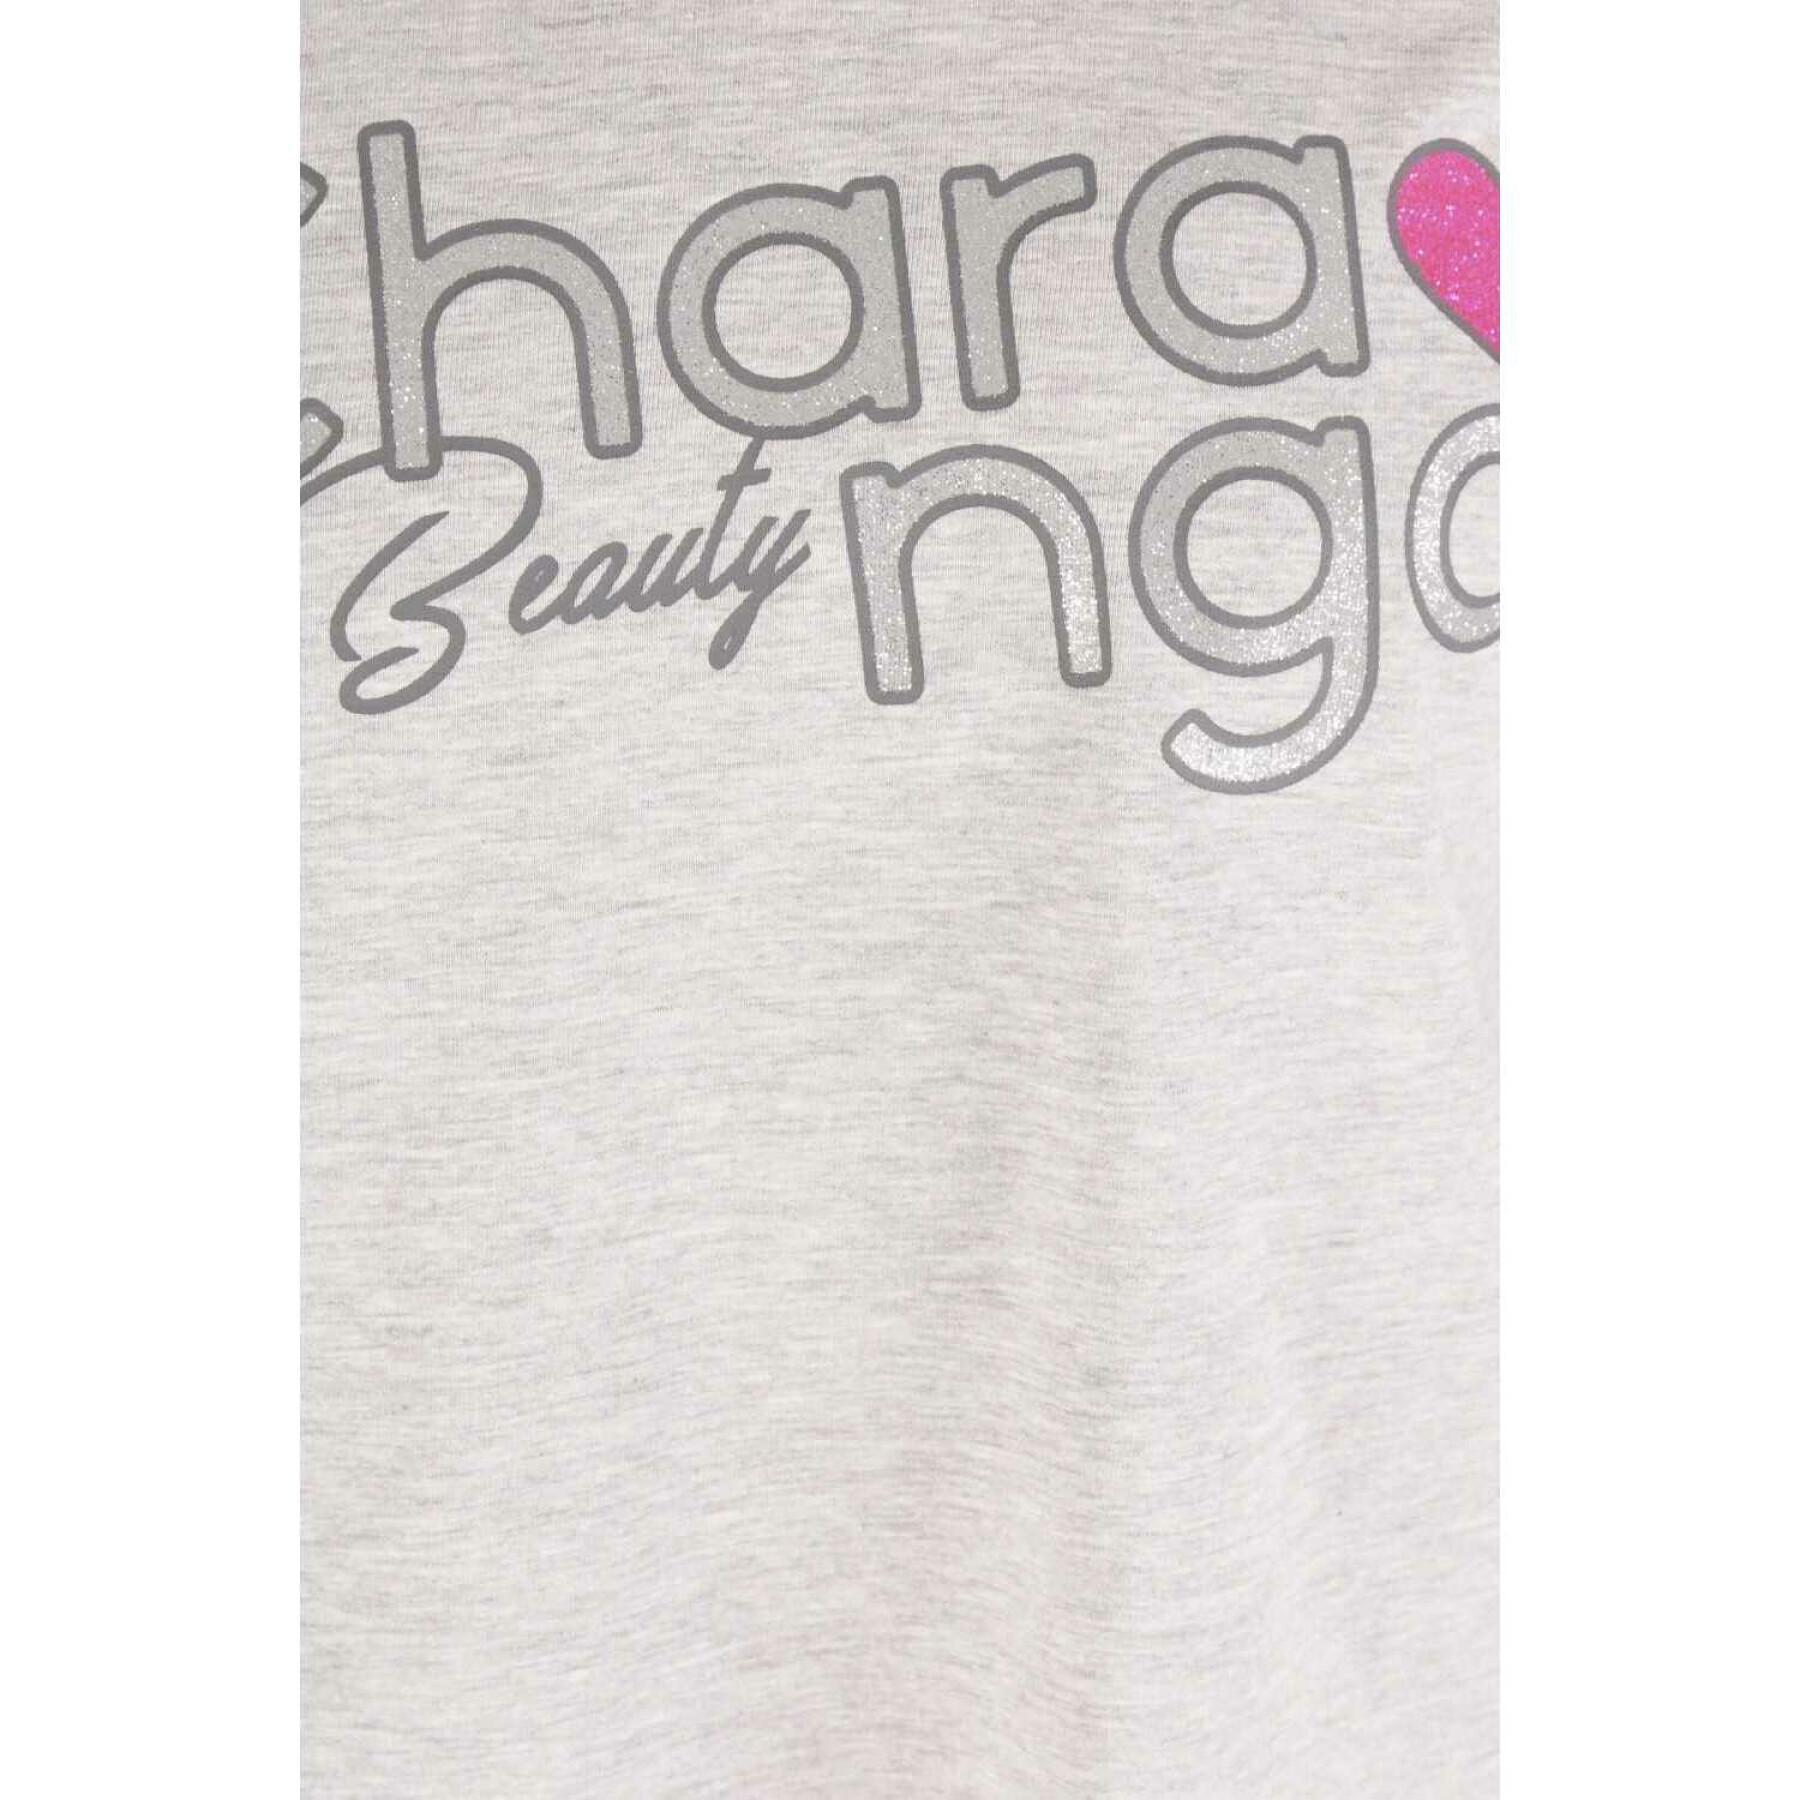 Meisjes-T-shirt Charanga Confix